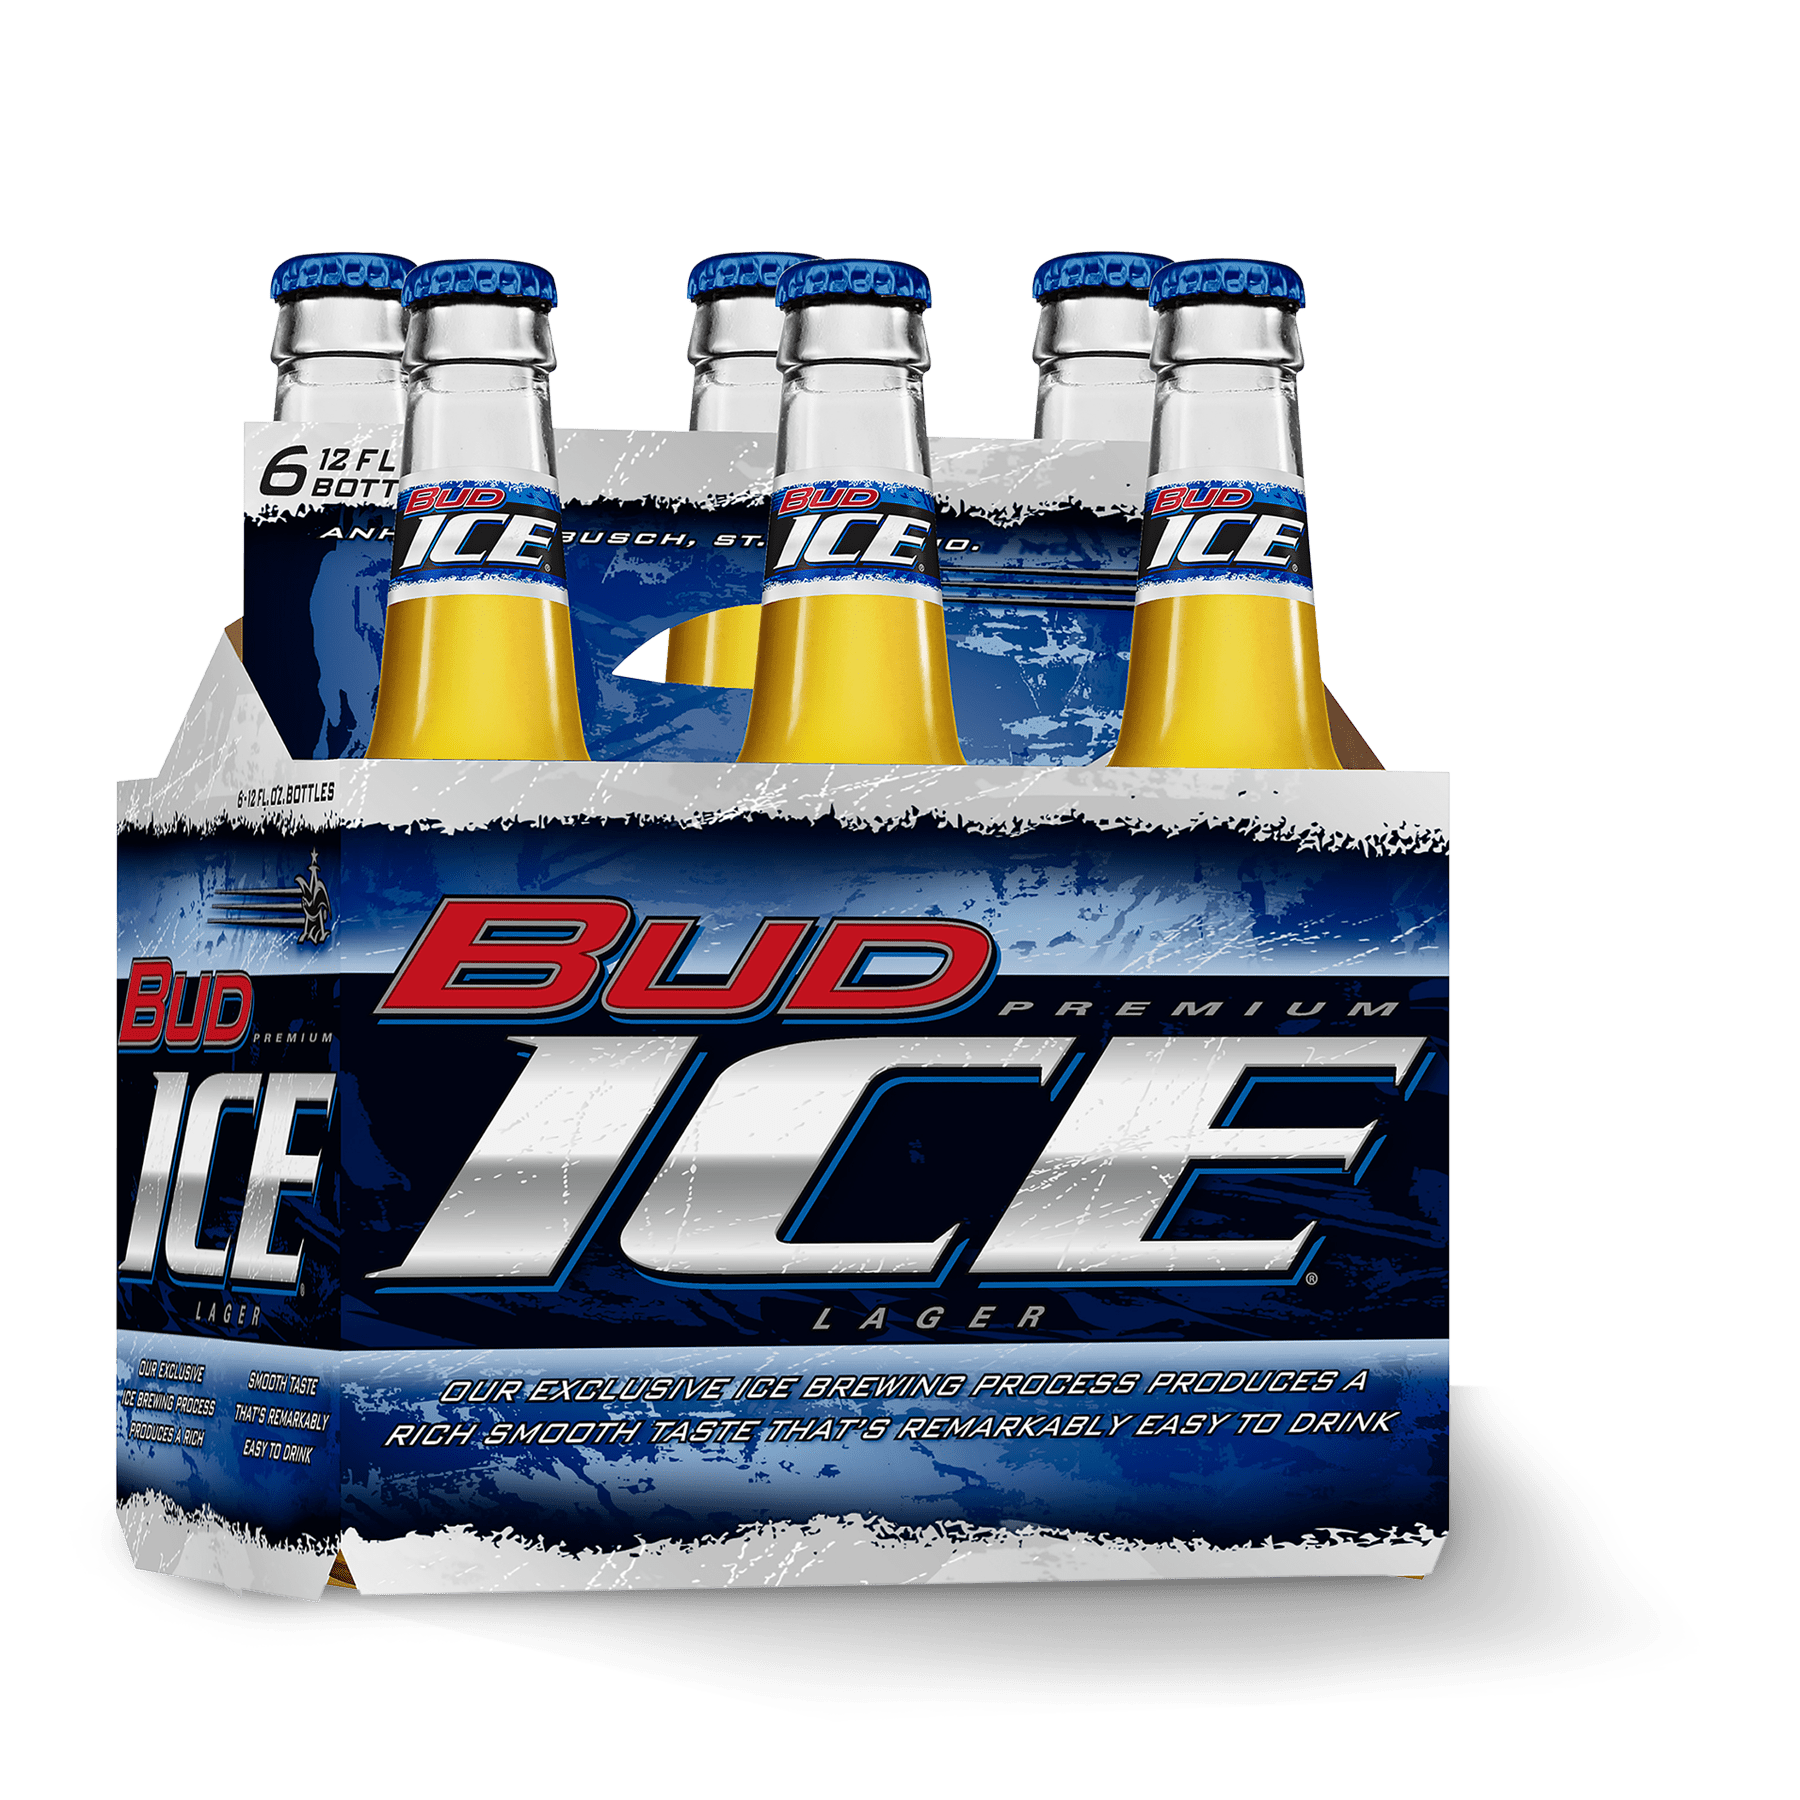 Пиво айс. Айс бир. Айс бир пиво. Невское айс пиво. Bud Ice Beer 1996.